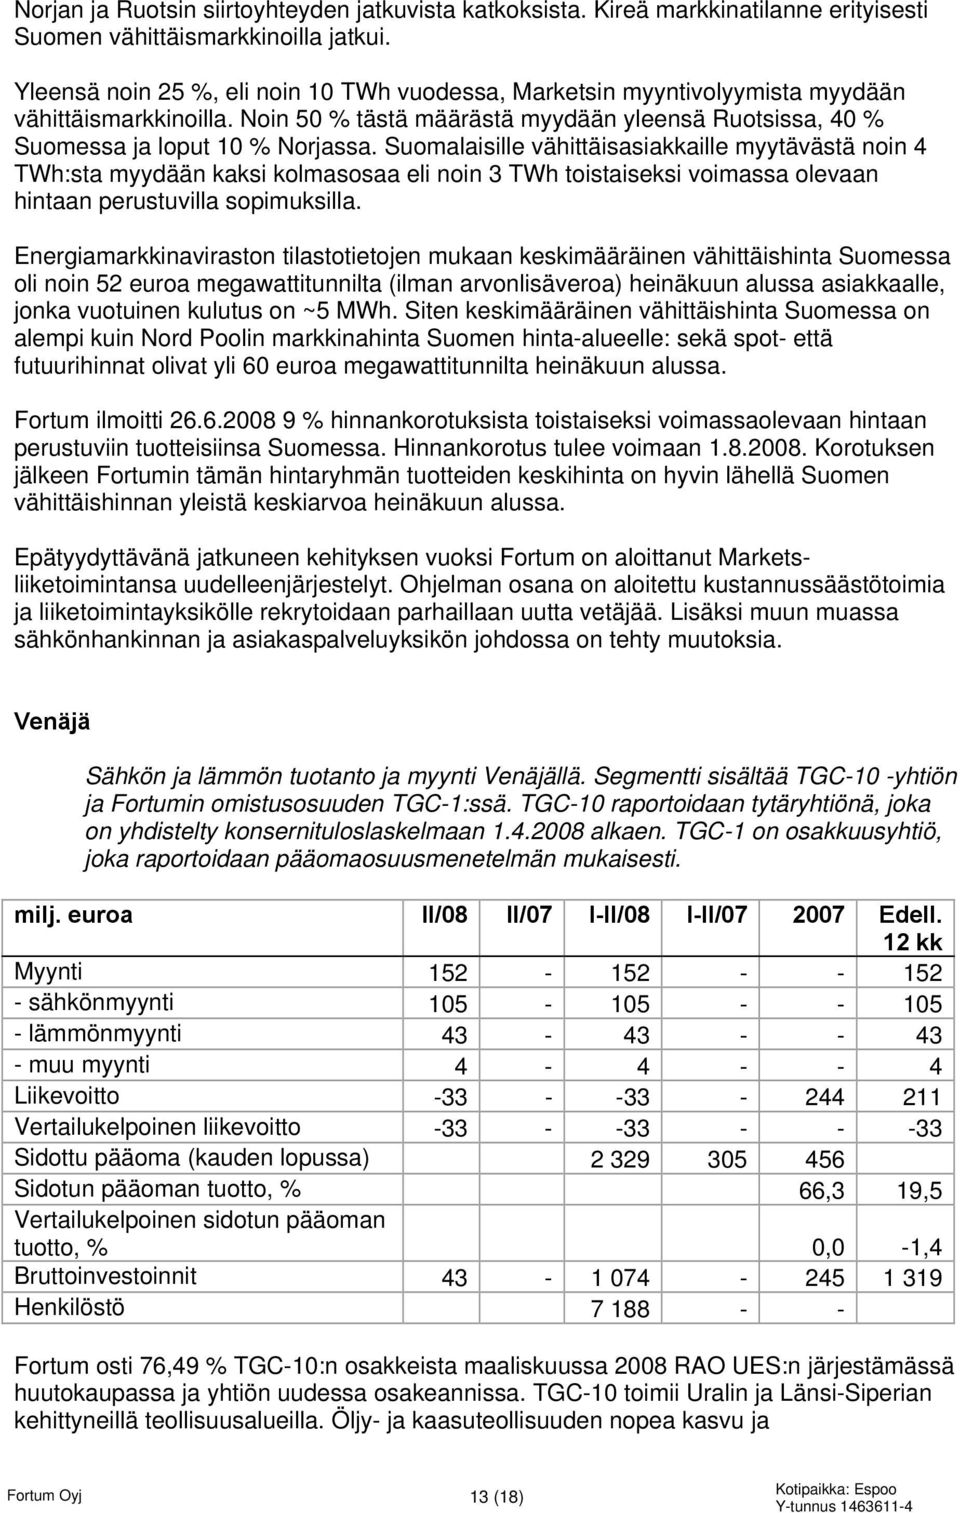 Suomalaisille vähittäisasiakkaille myytävästä noin 4 TWh:sta myydään kaksi kolmasosaa eli noin 3 TWh toistaiseksi voimassa olevaan hintaan perustuvilla sopimuksilla.